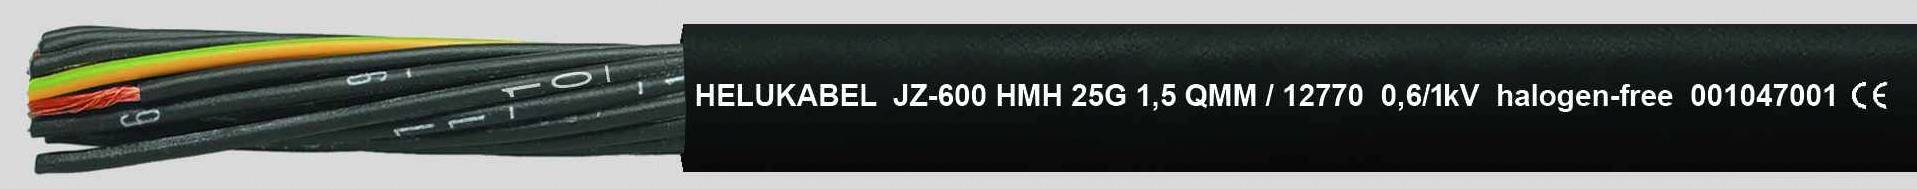 HELUKABEL JZ-600 HMH Steuerleitung 4 G 1 mm² Schwarz 12750-500 500 m